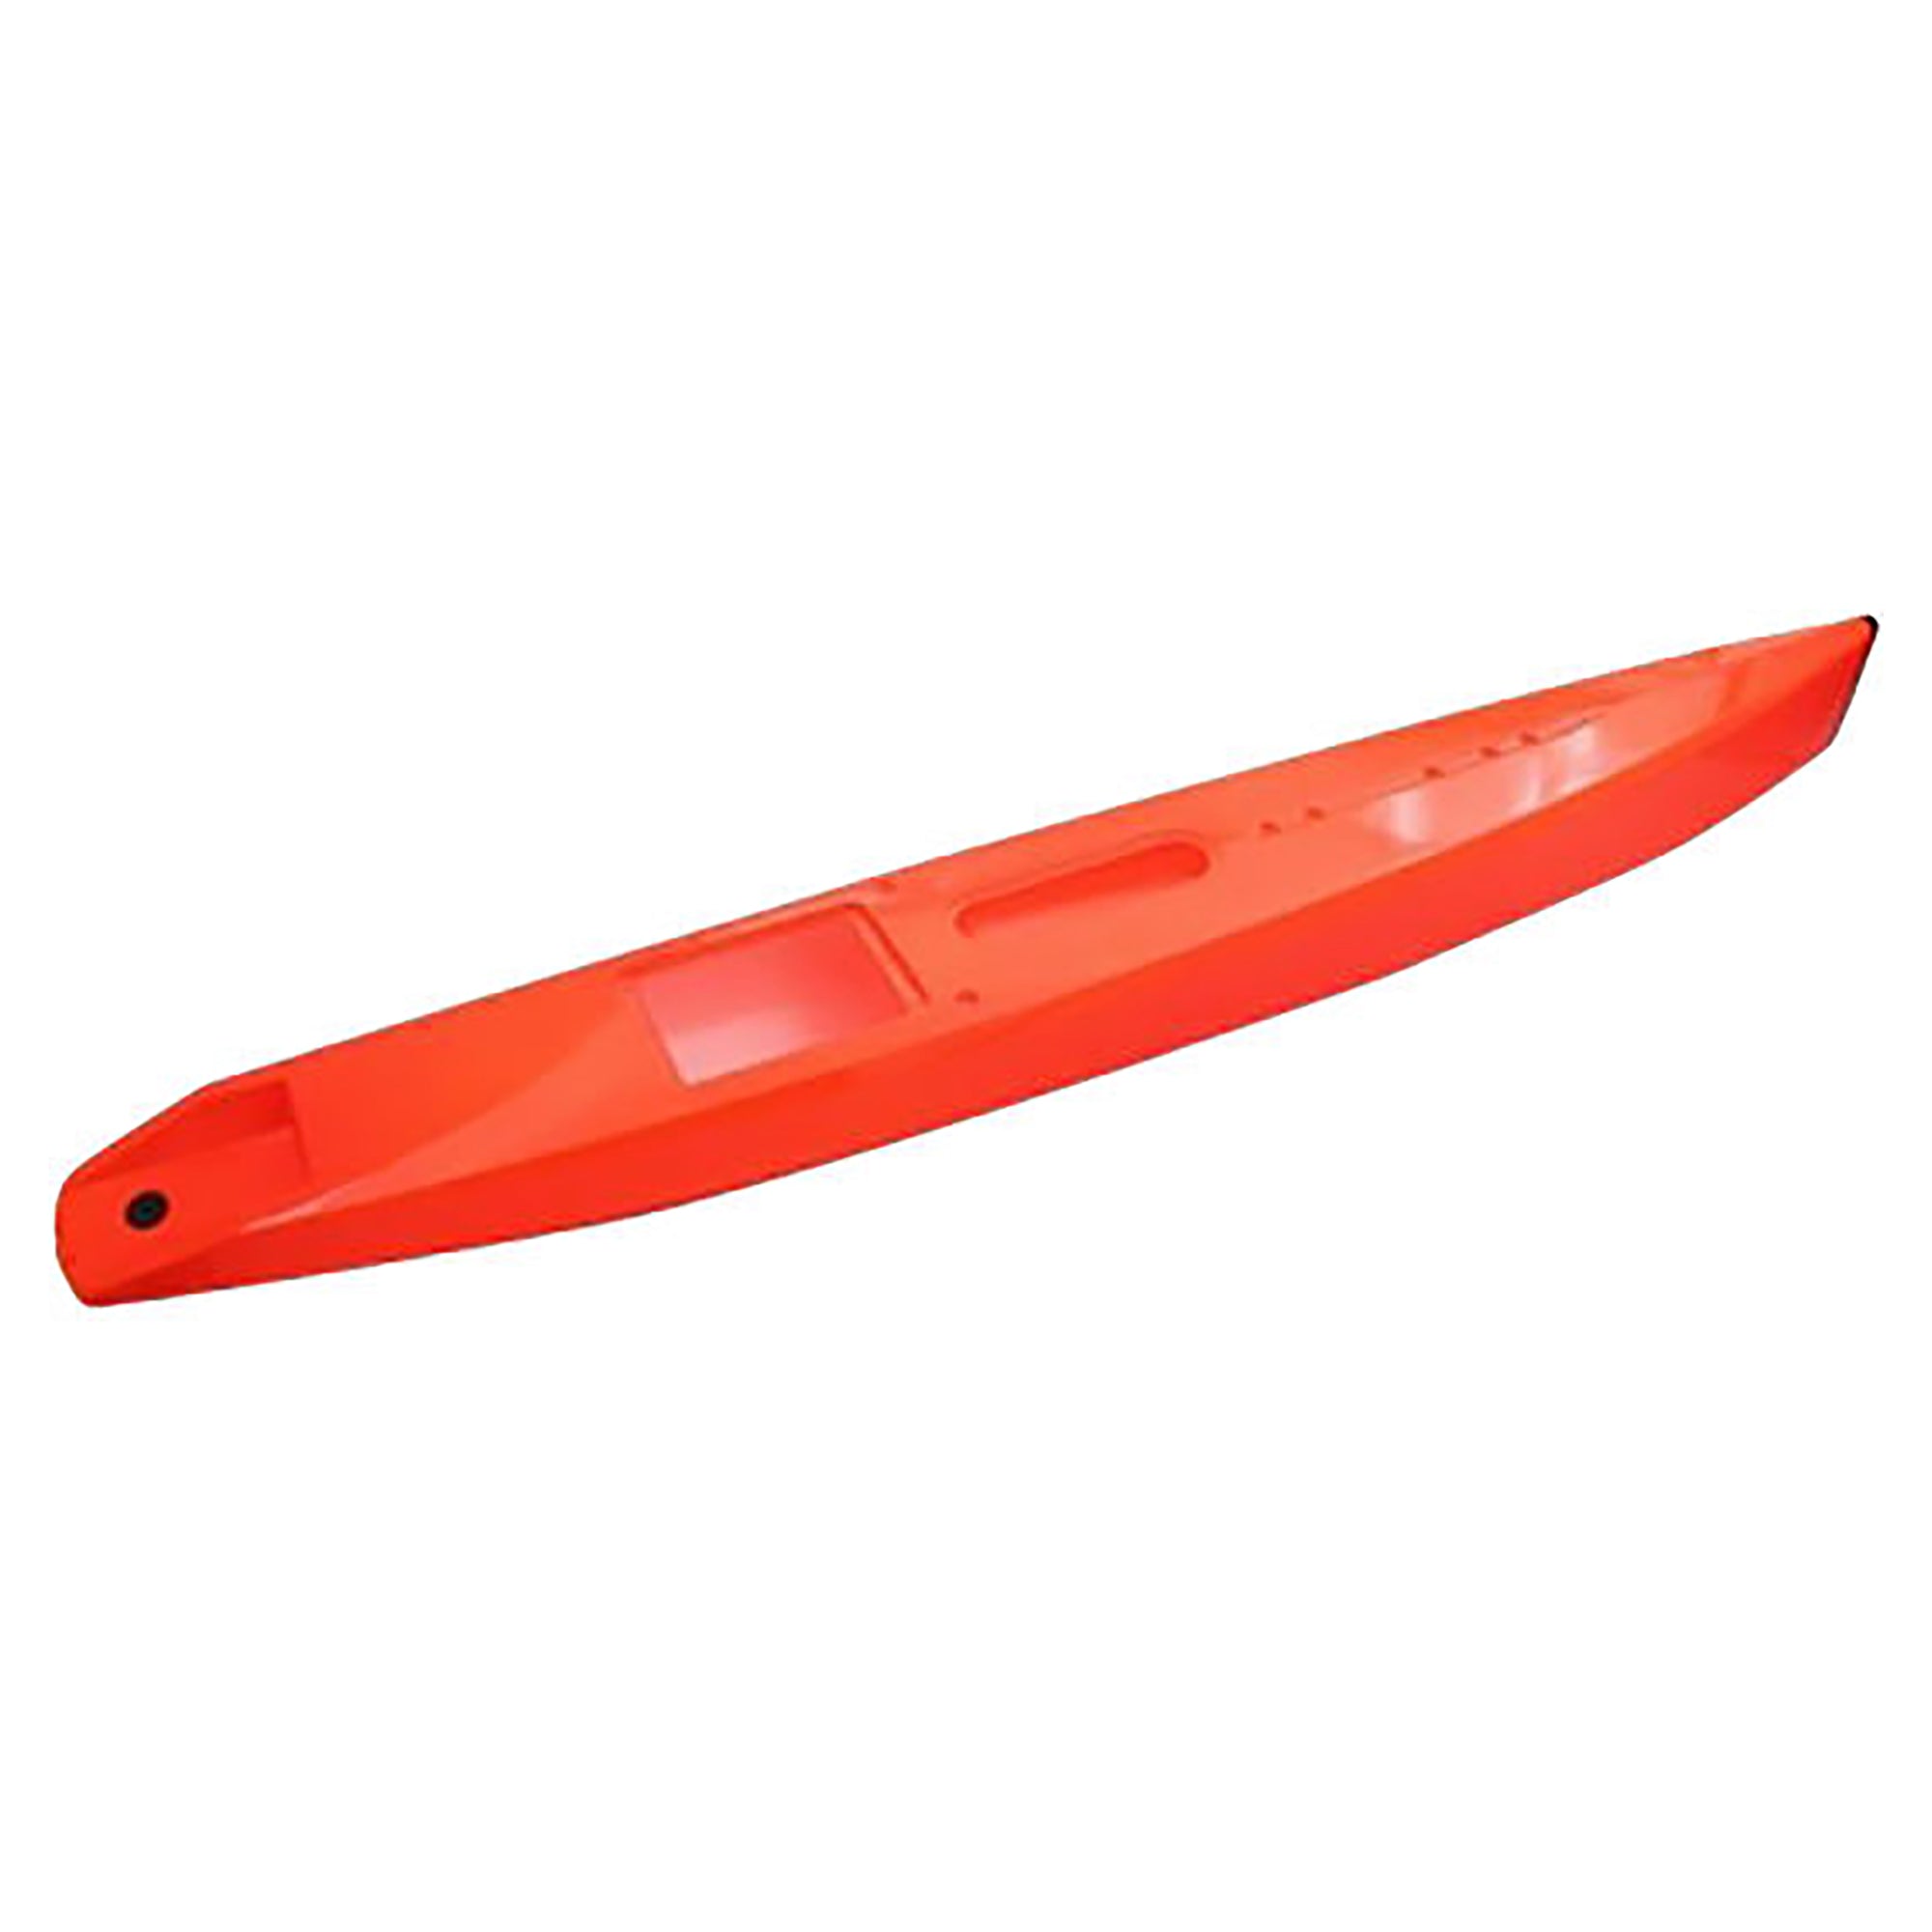 Joysway 881171 DF95 Painted Orange Hull, Red